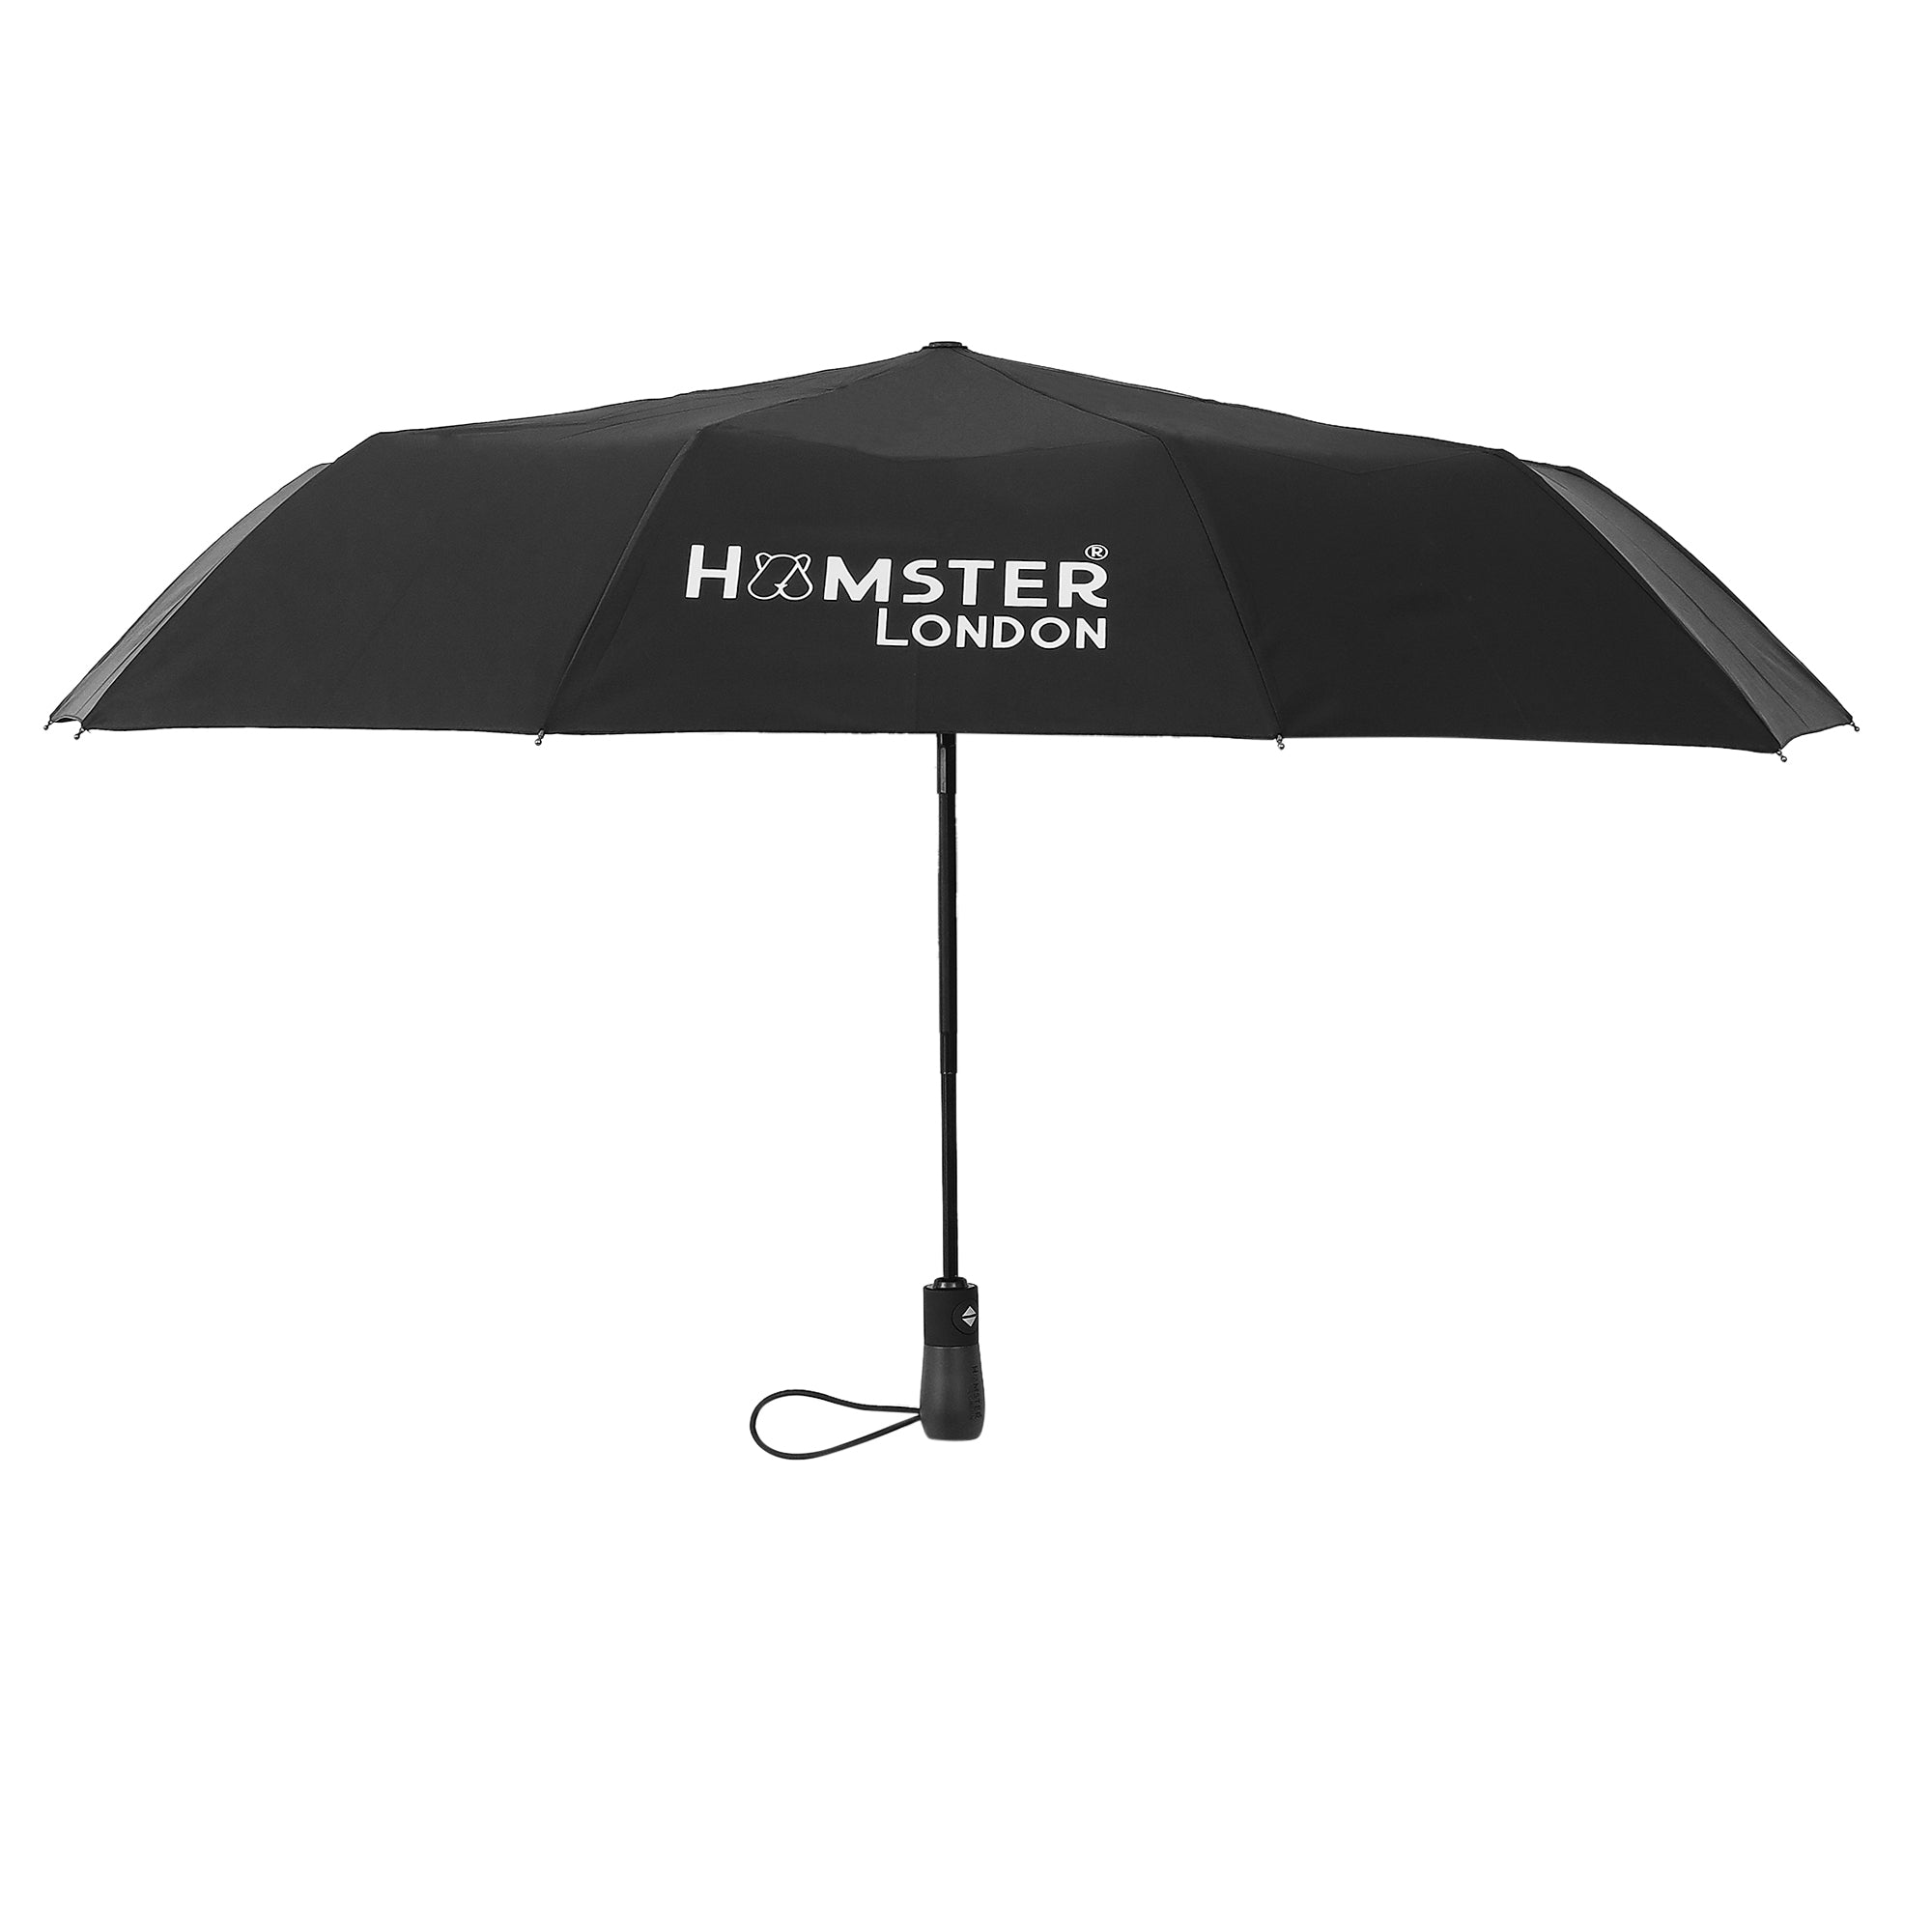 Wooden Automatic Open & Close Pocket Folding Umbrella (Black)